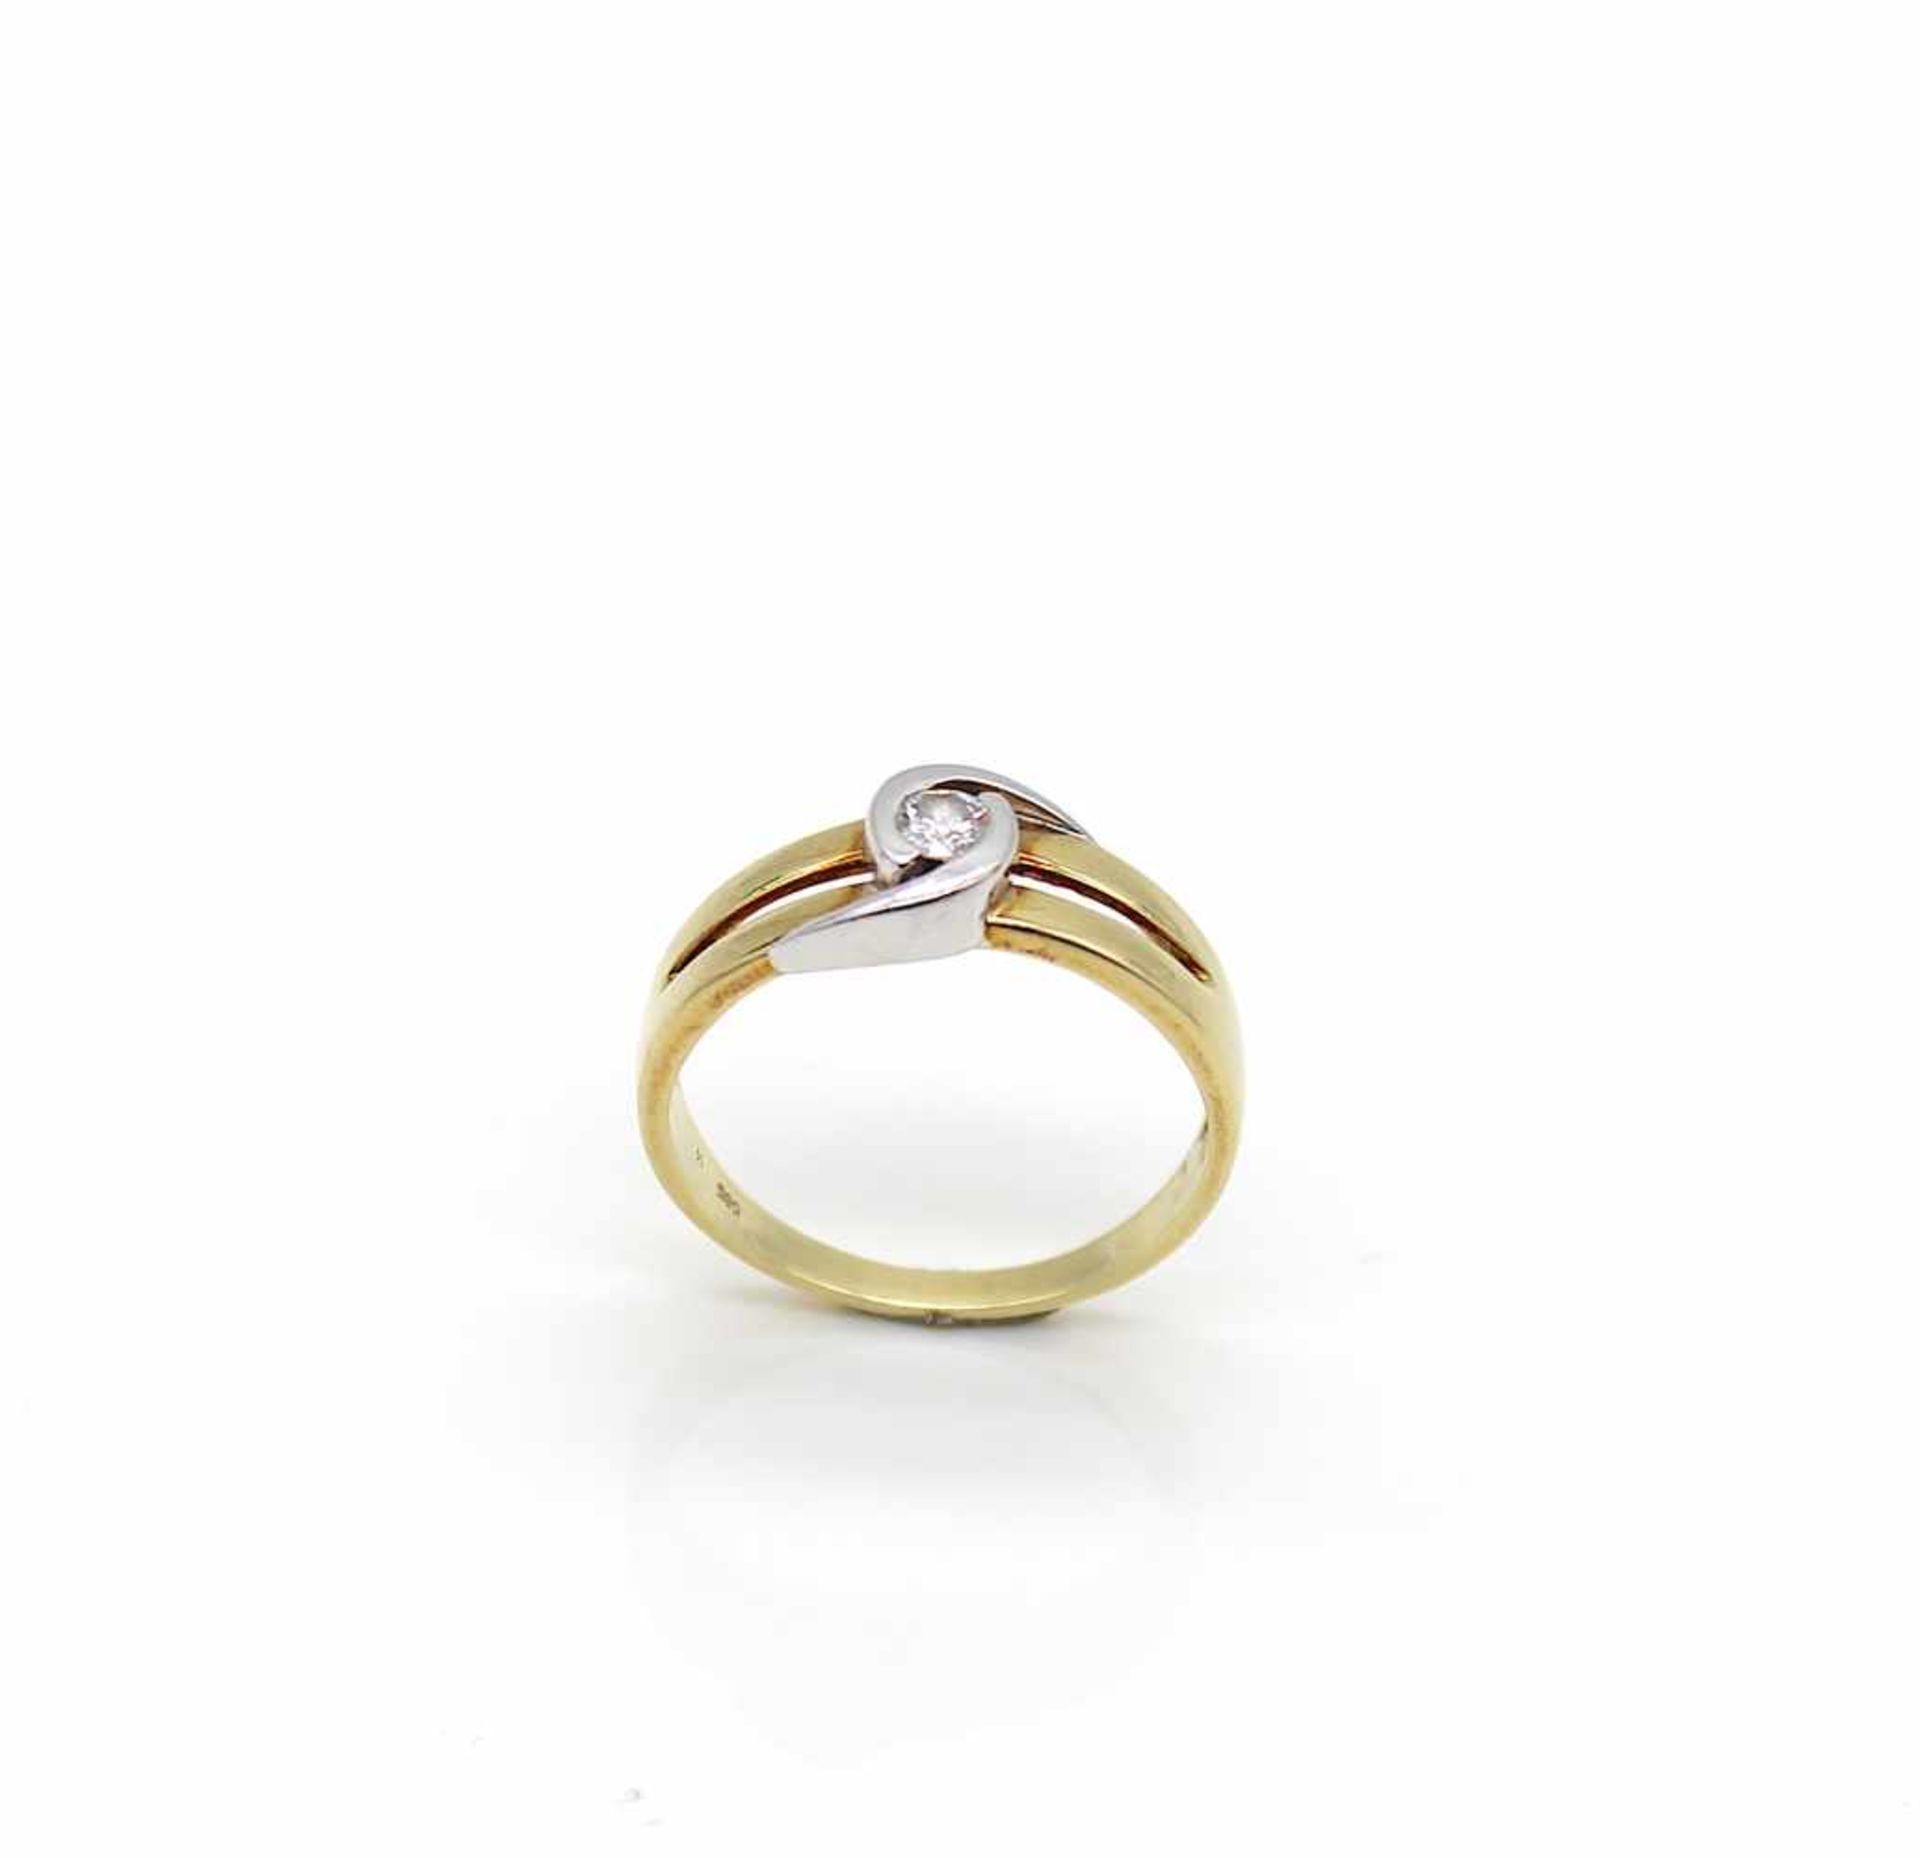 Ring aus 585er Gold mit einem Brillanten ca. 0,16 ct, hohe Reinheit mittlere Farbe. Gewicht 3,8 g, - Bild 2 aus 3